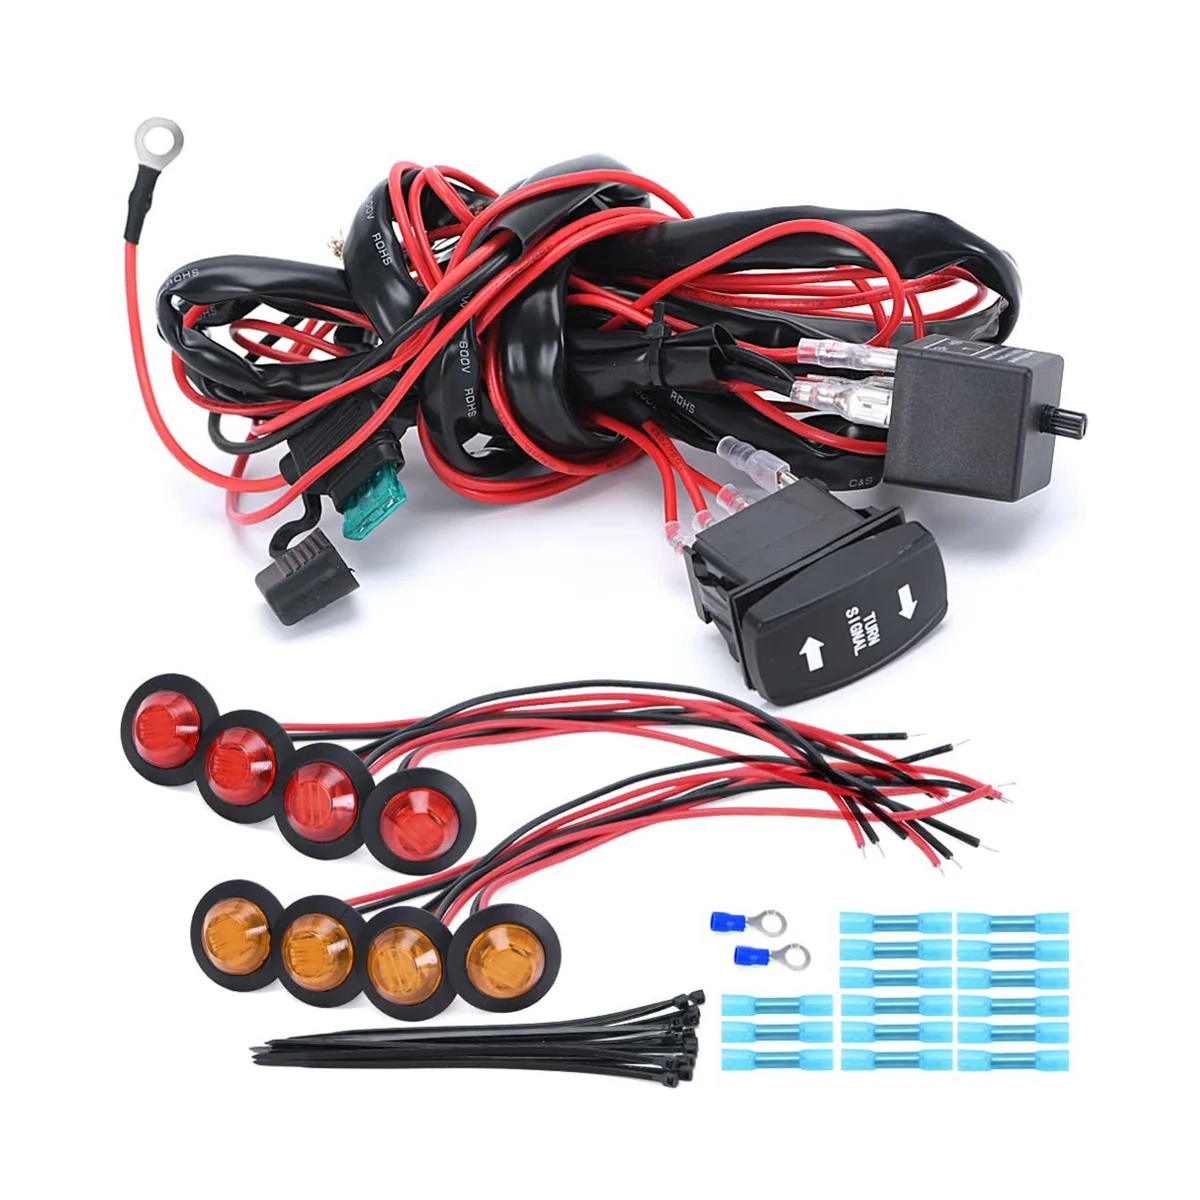 

Universal ATV/UTV Turn Signal Kit Horn Flasher Relay Harness System Kit for Golf Cart SXS ATV UTV Street